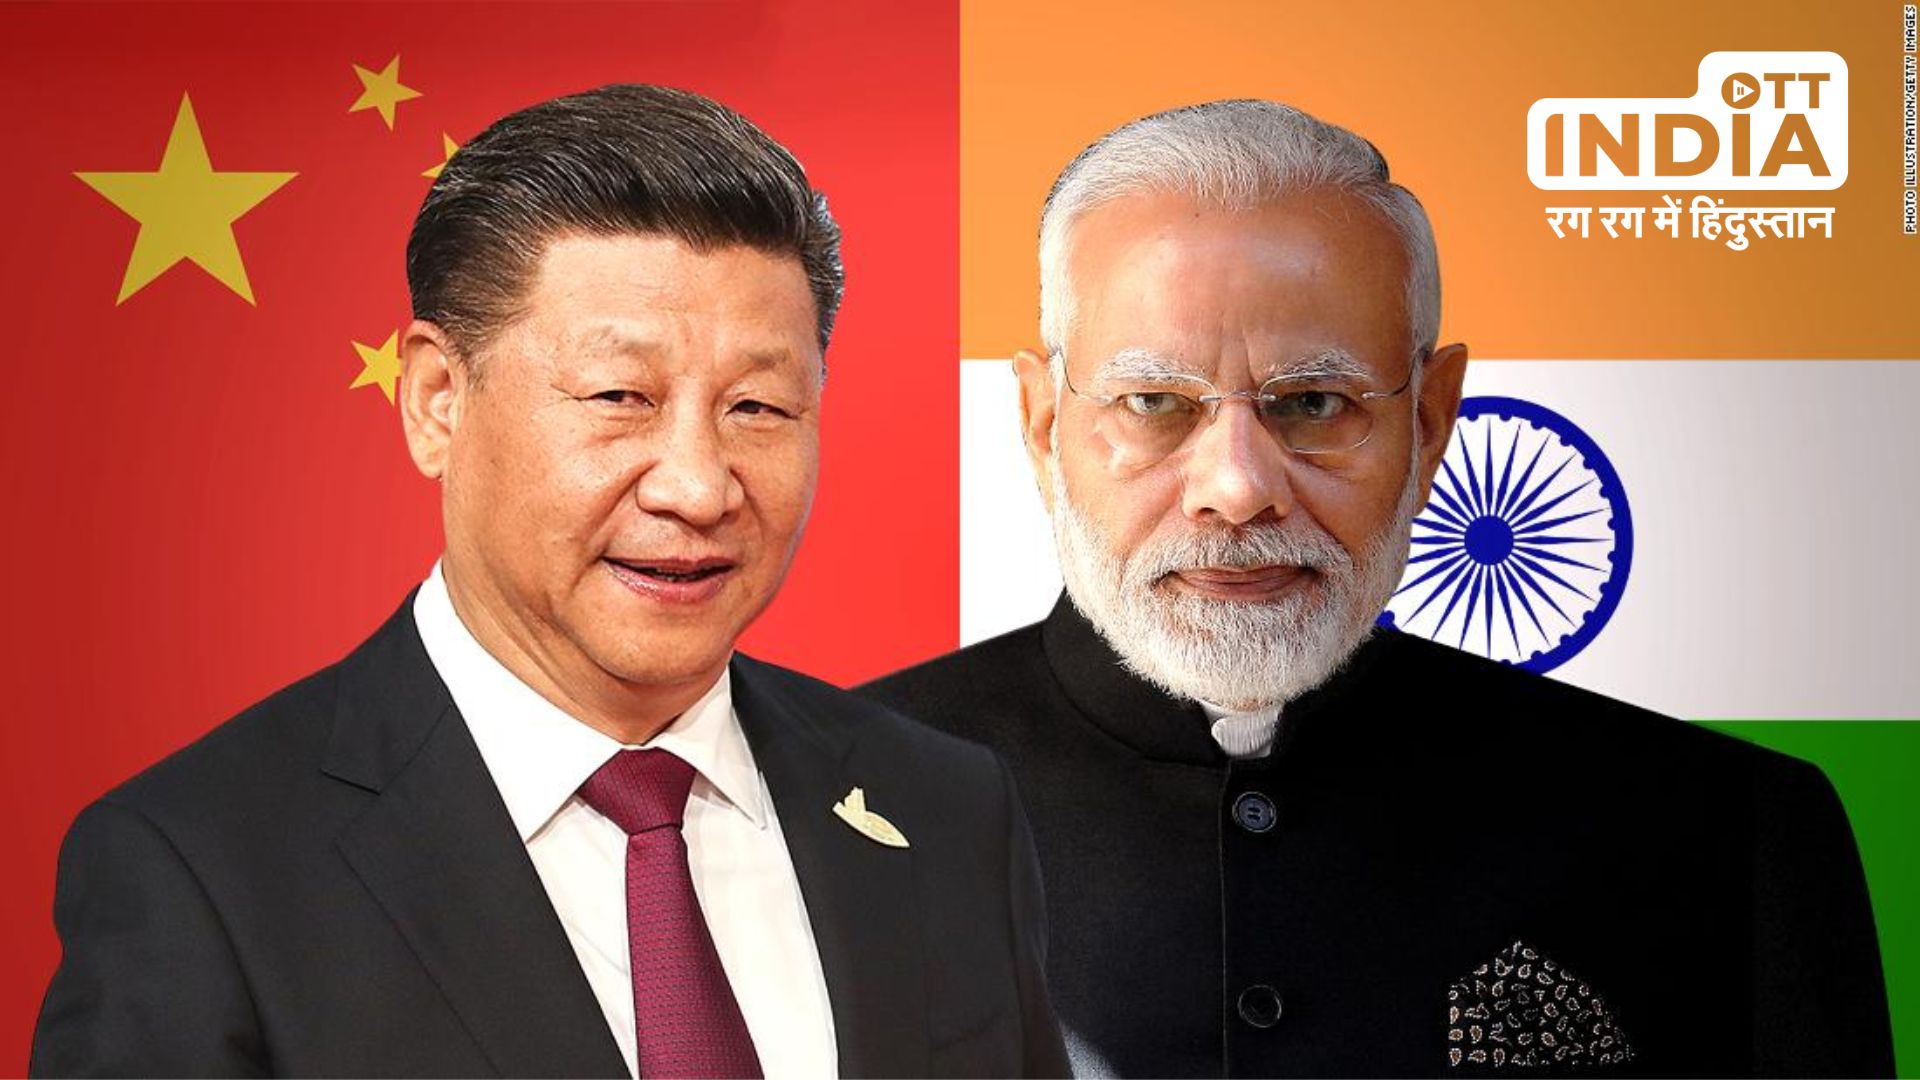 BRO : भारत का चीन को सख्त संदेश, लद्दाख के न्योमा में बनेगा दुनिया का सबसे ऊंचा लड़ाकू हवाई क्षेत्र